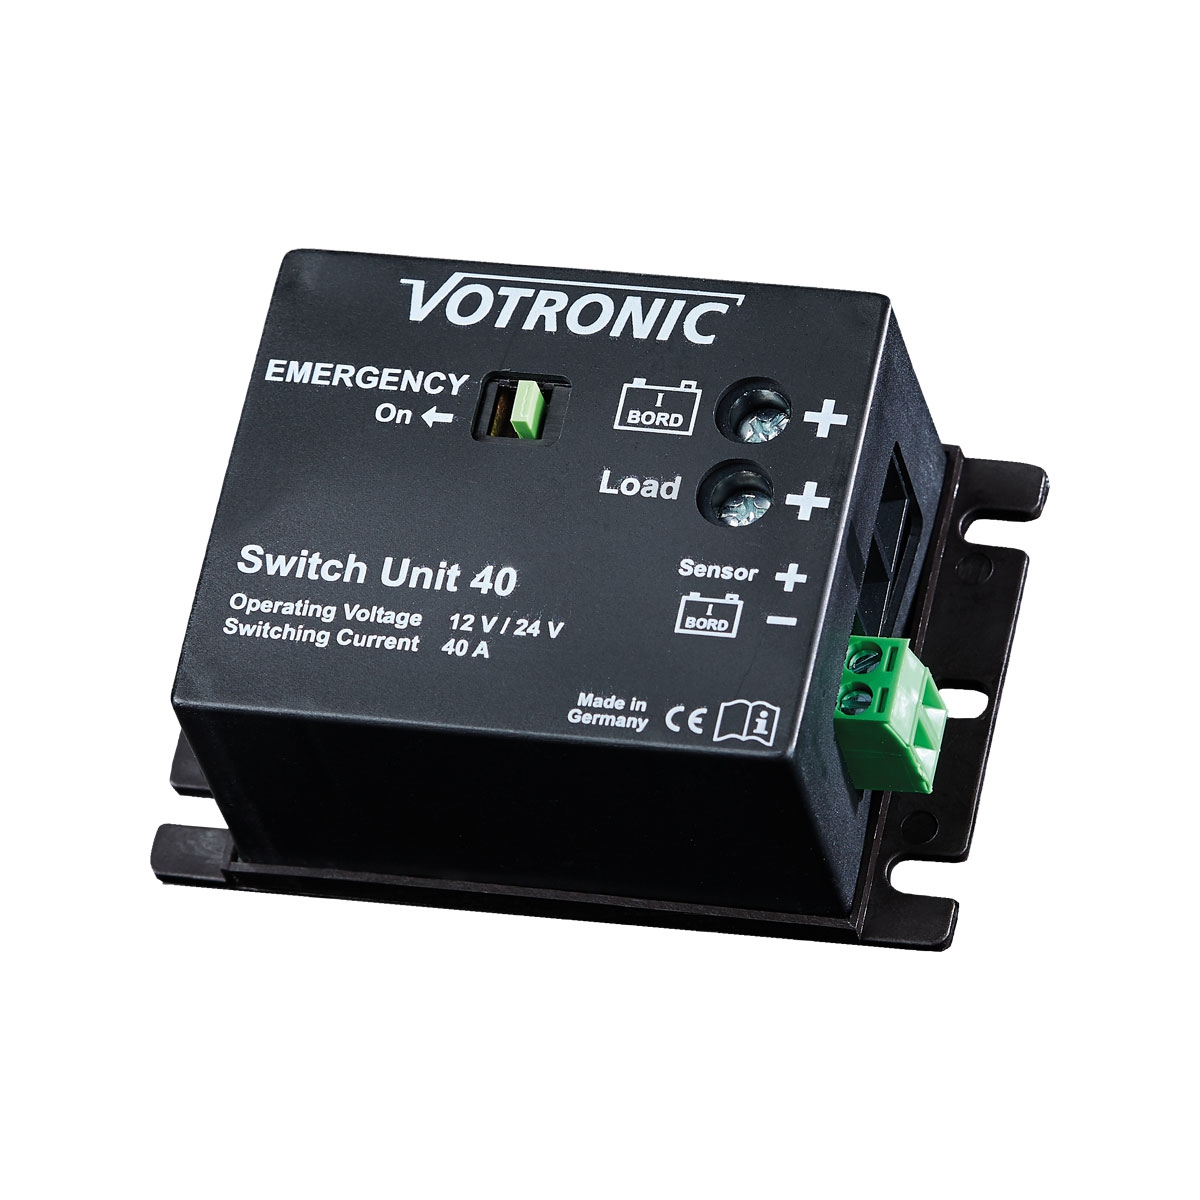 VOTRONIC Switch Unit 40 - 2071